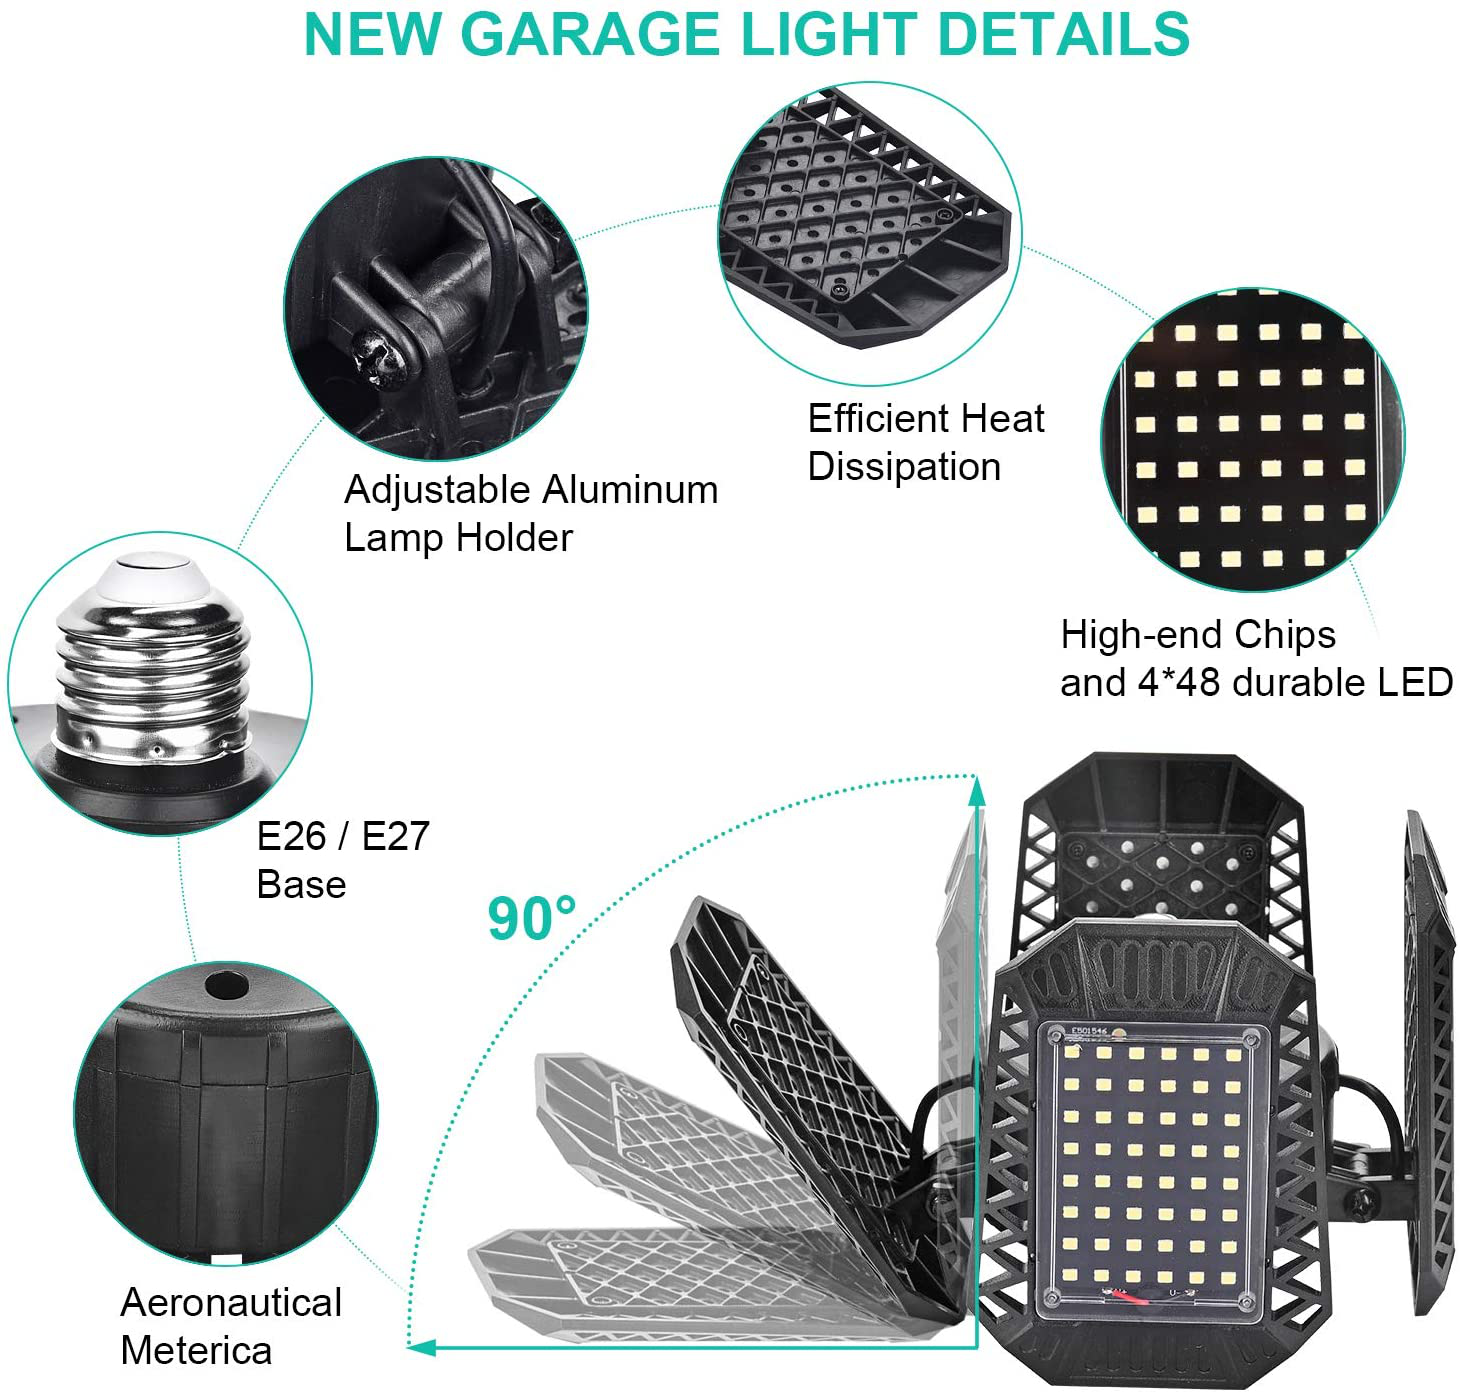 2 Pack LED Garage Lights, 80W Deformable LED Garage Ceiling Lights with 4 Adjustable Panels, 8000LM E26 LED Shop Lights for Garage, Basement, Barn, High Bay Light (Black, 2PACK)